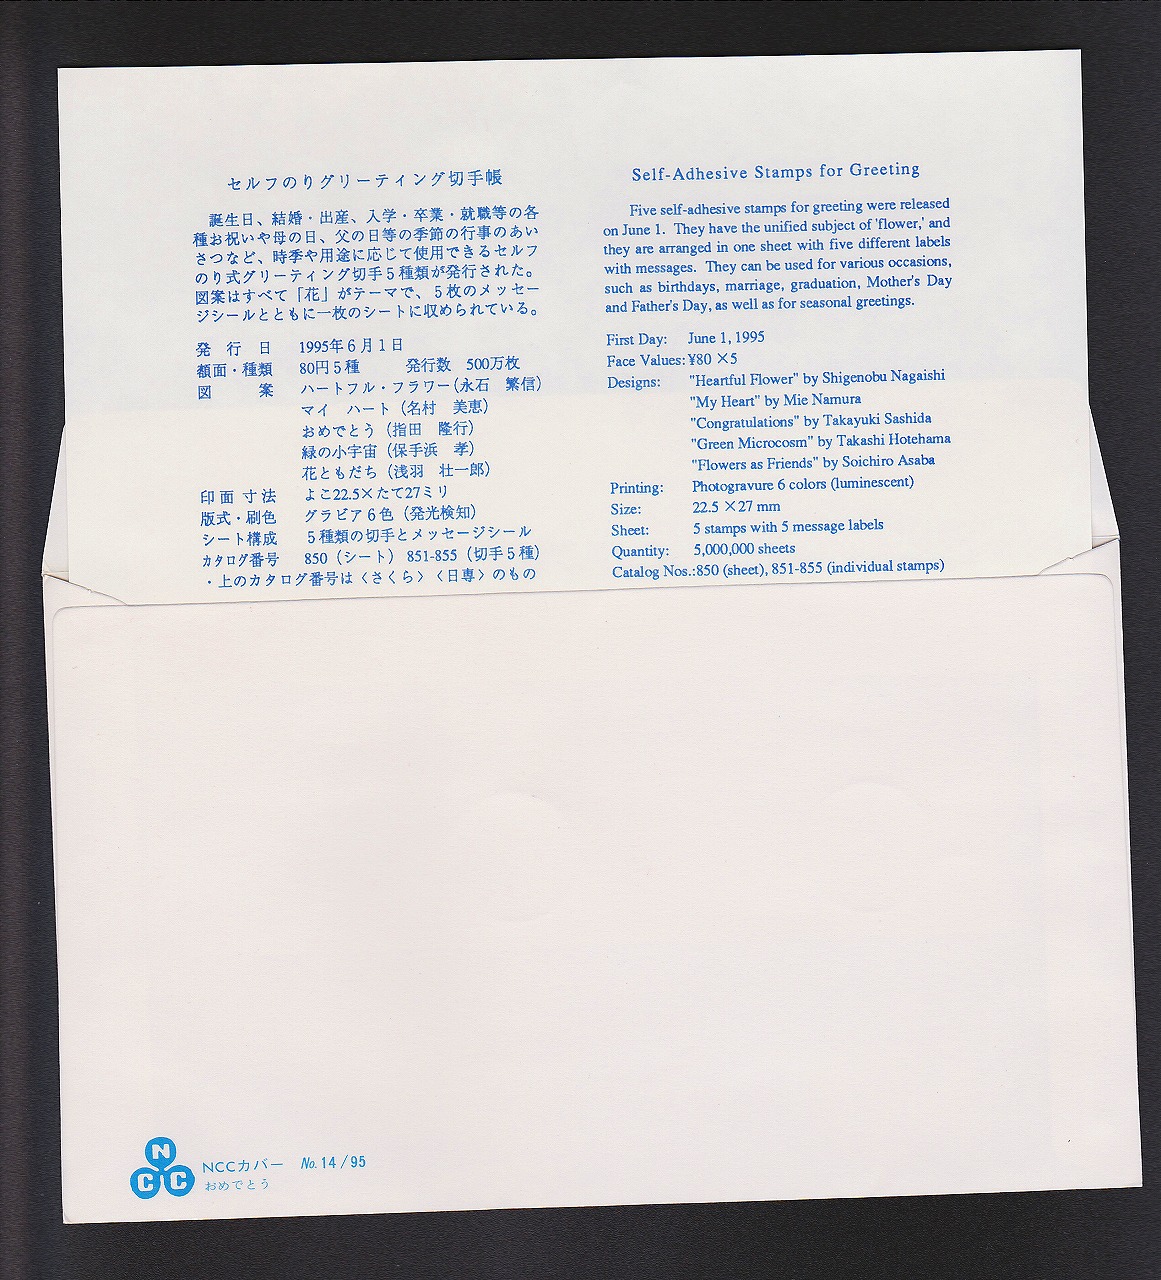 東洋印刷 nana インクジェット用光沢ラベル 24面 SCJ-61 ★2ケースセット - 1